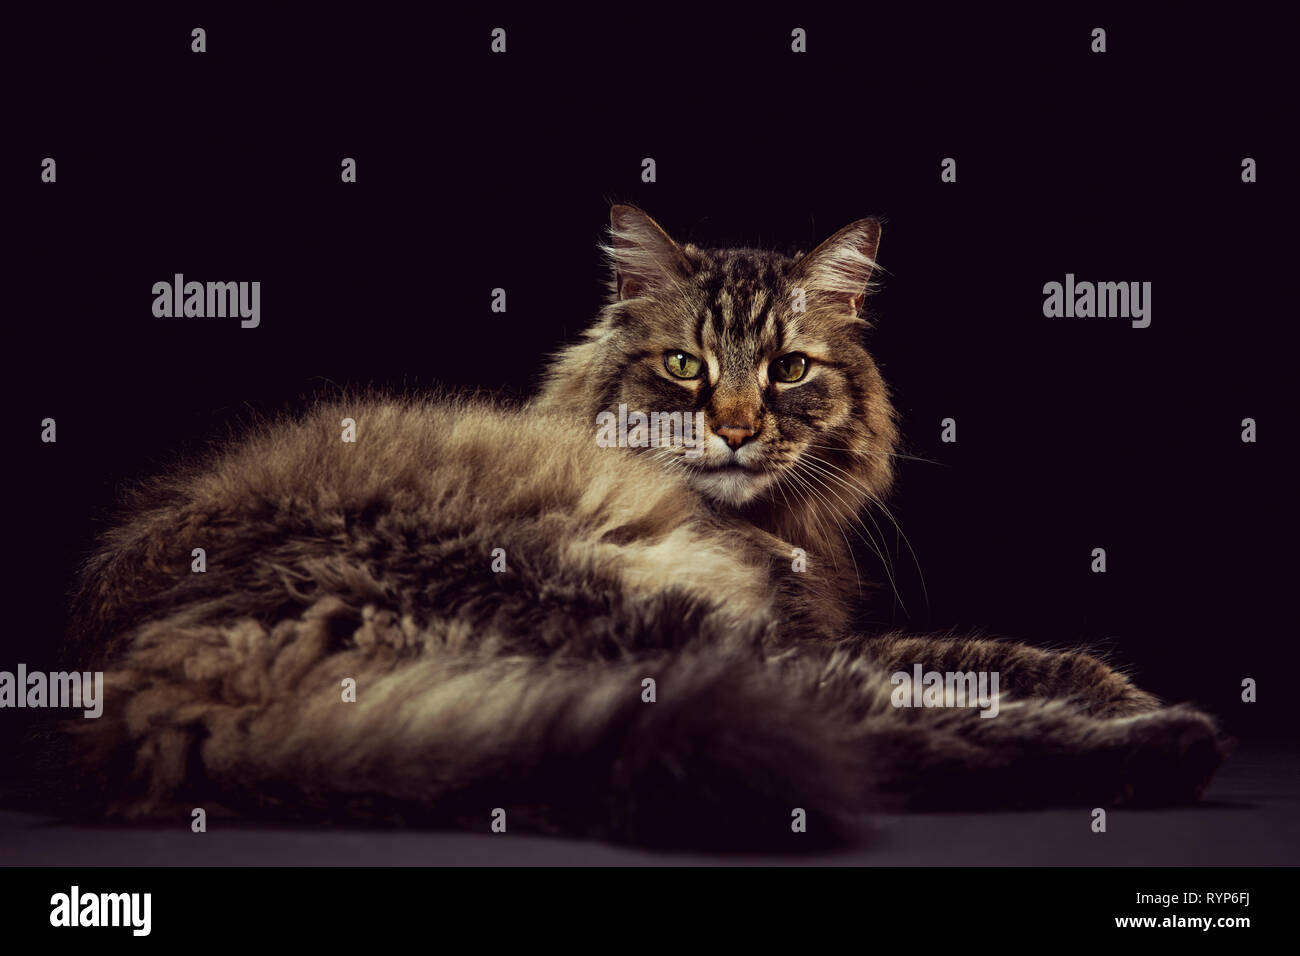 Retrato de estudio de cuerpo completo de un marrón gato atigrado acostado sobre un fondo negro y mirando directamente a la cámara. Foto de stock